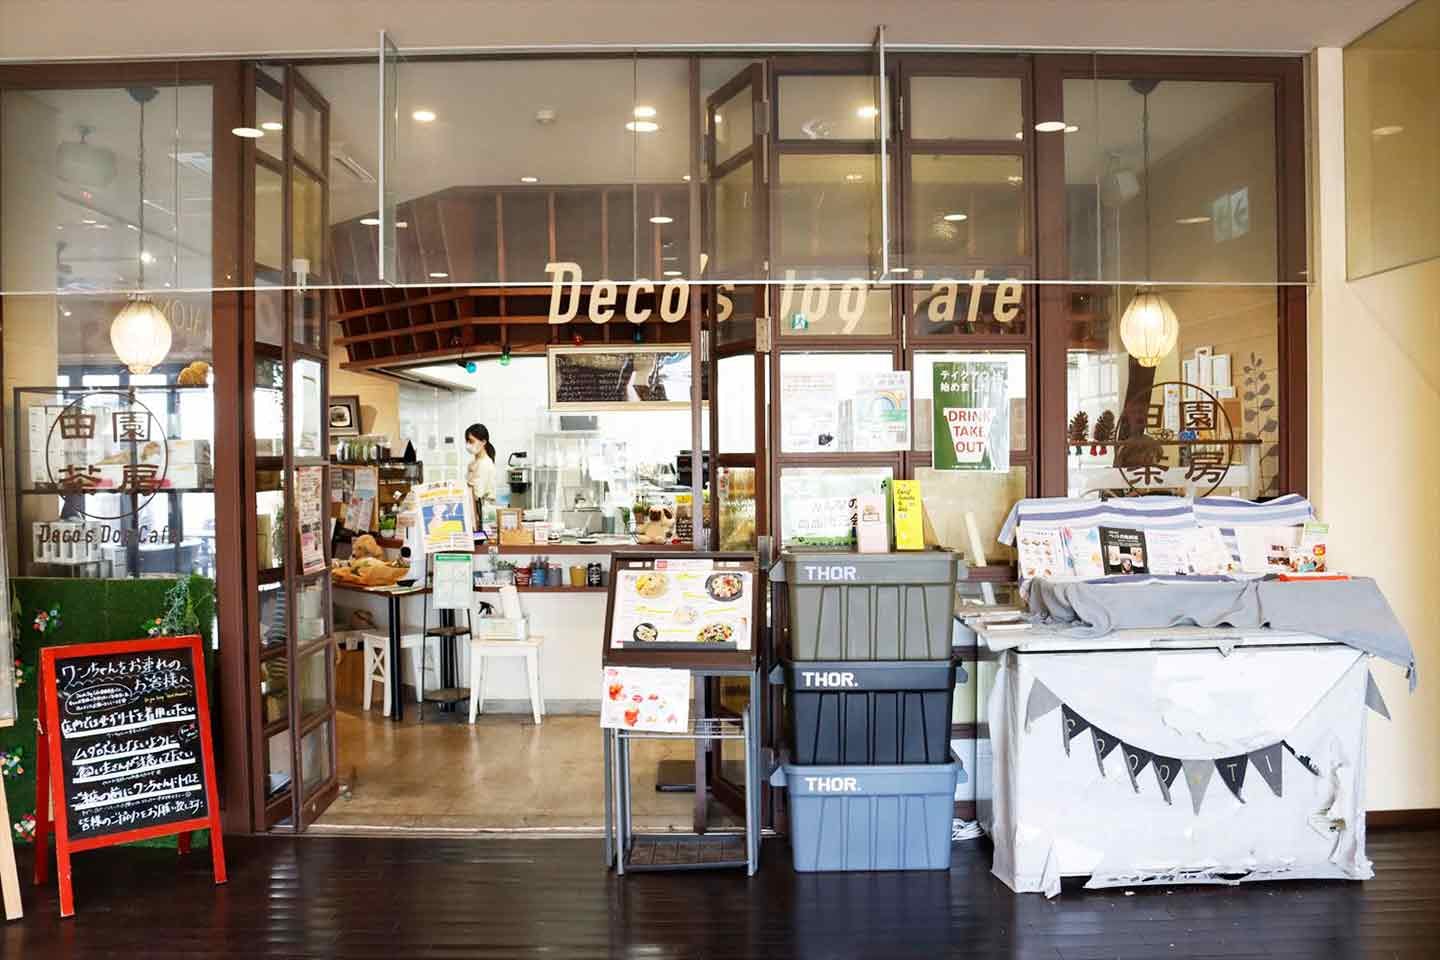 Decoさんがプロデュースする『Deco's Dog Cafe（デコズドッグカフェ）田園茶房』